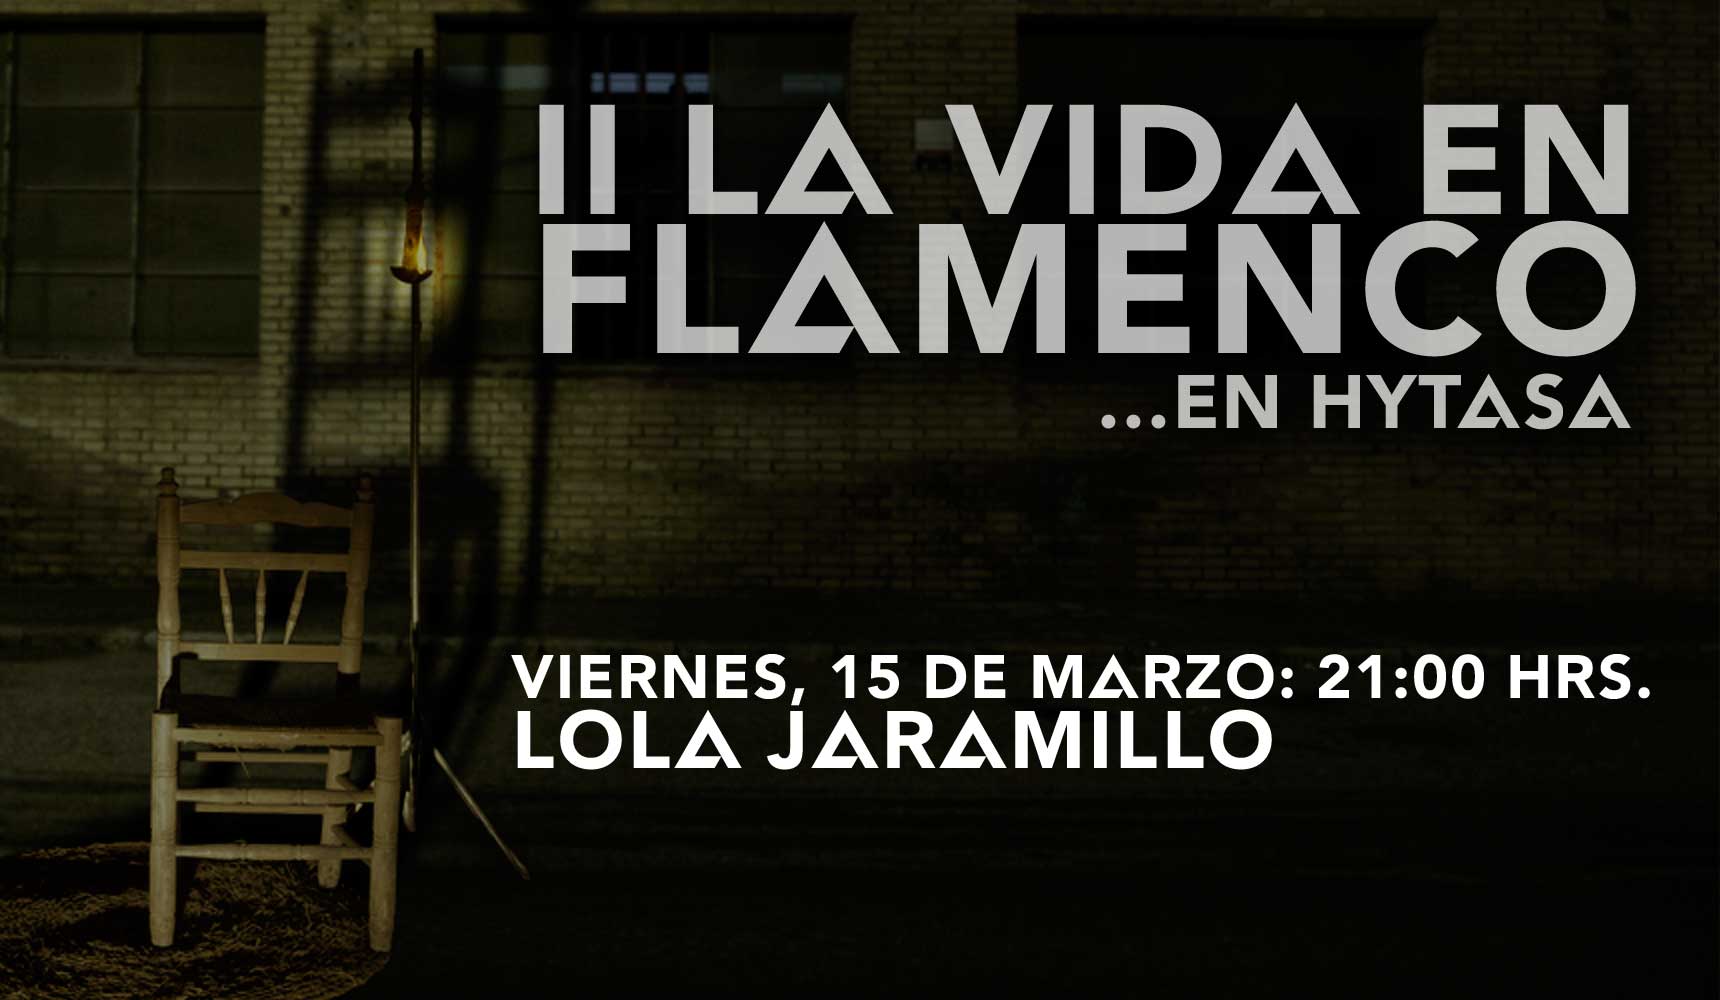 La Vida en Flamenco con Lola Jaramillo